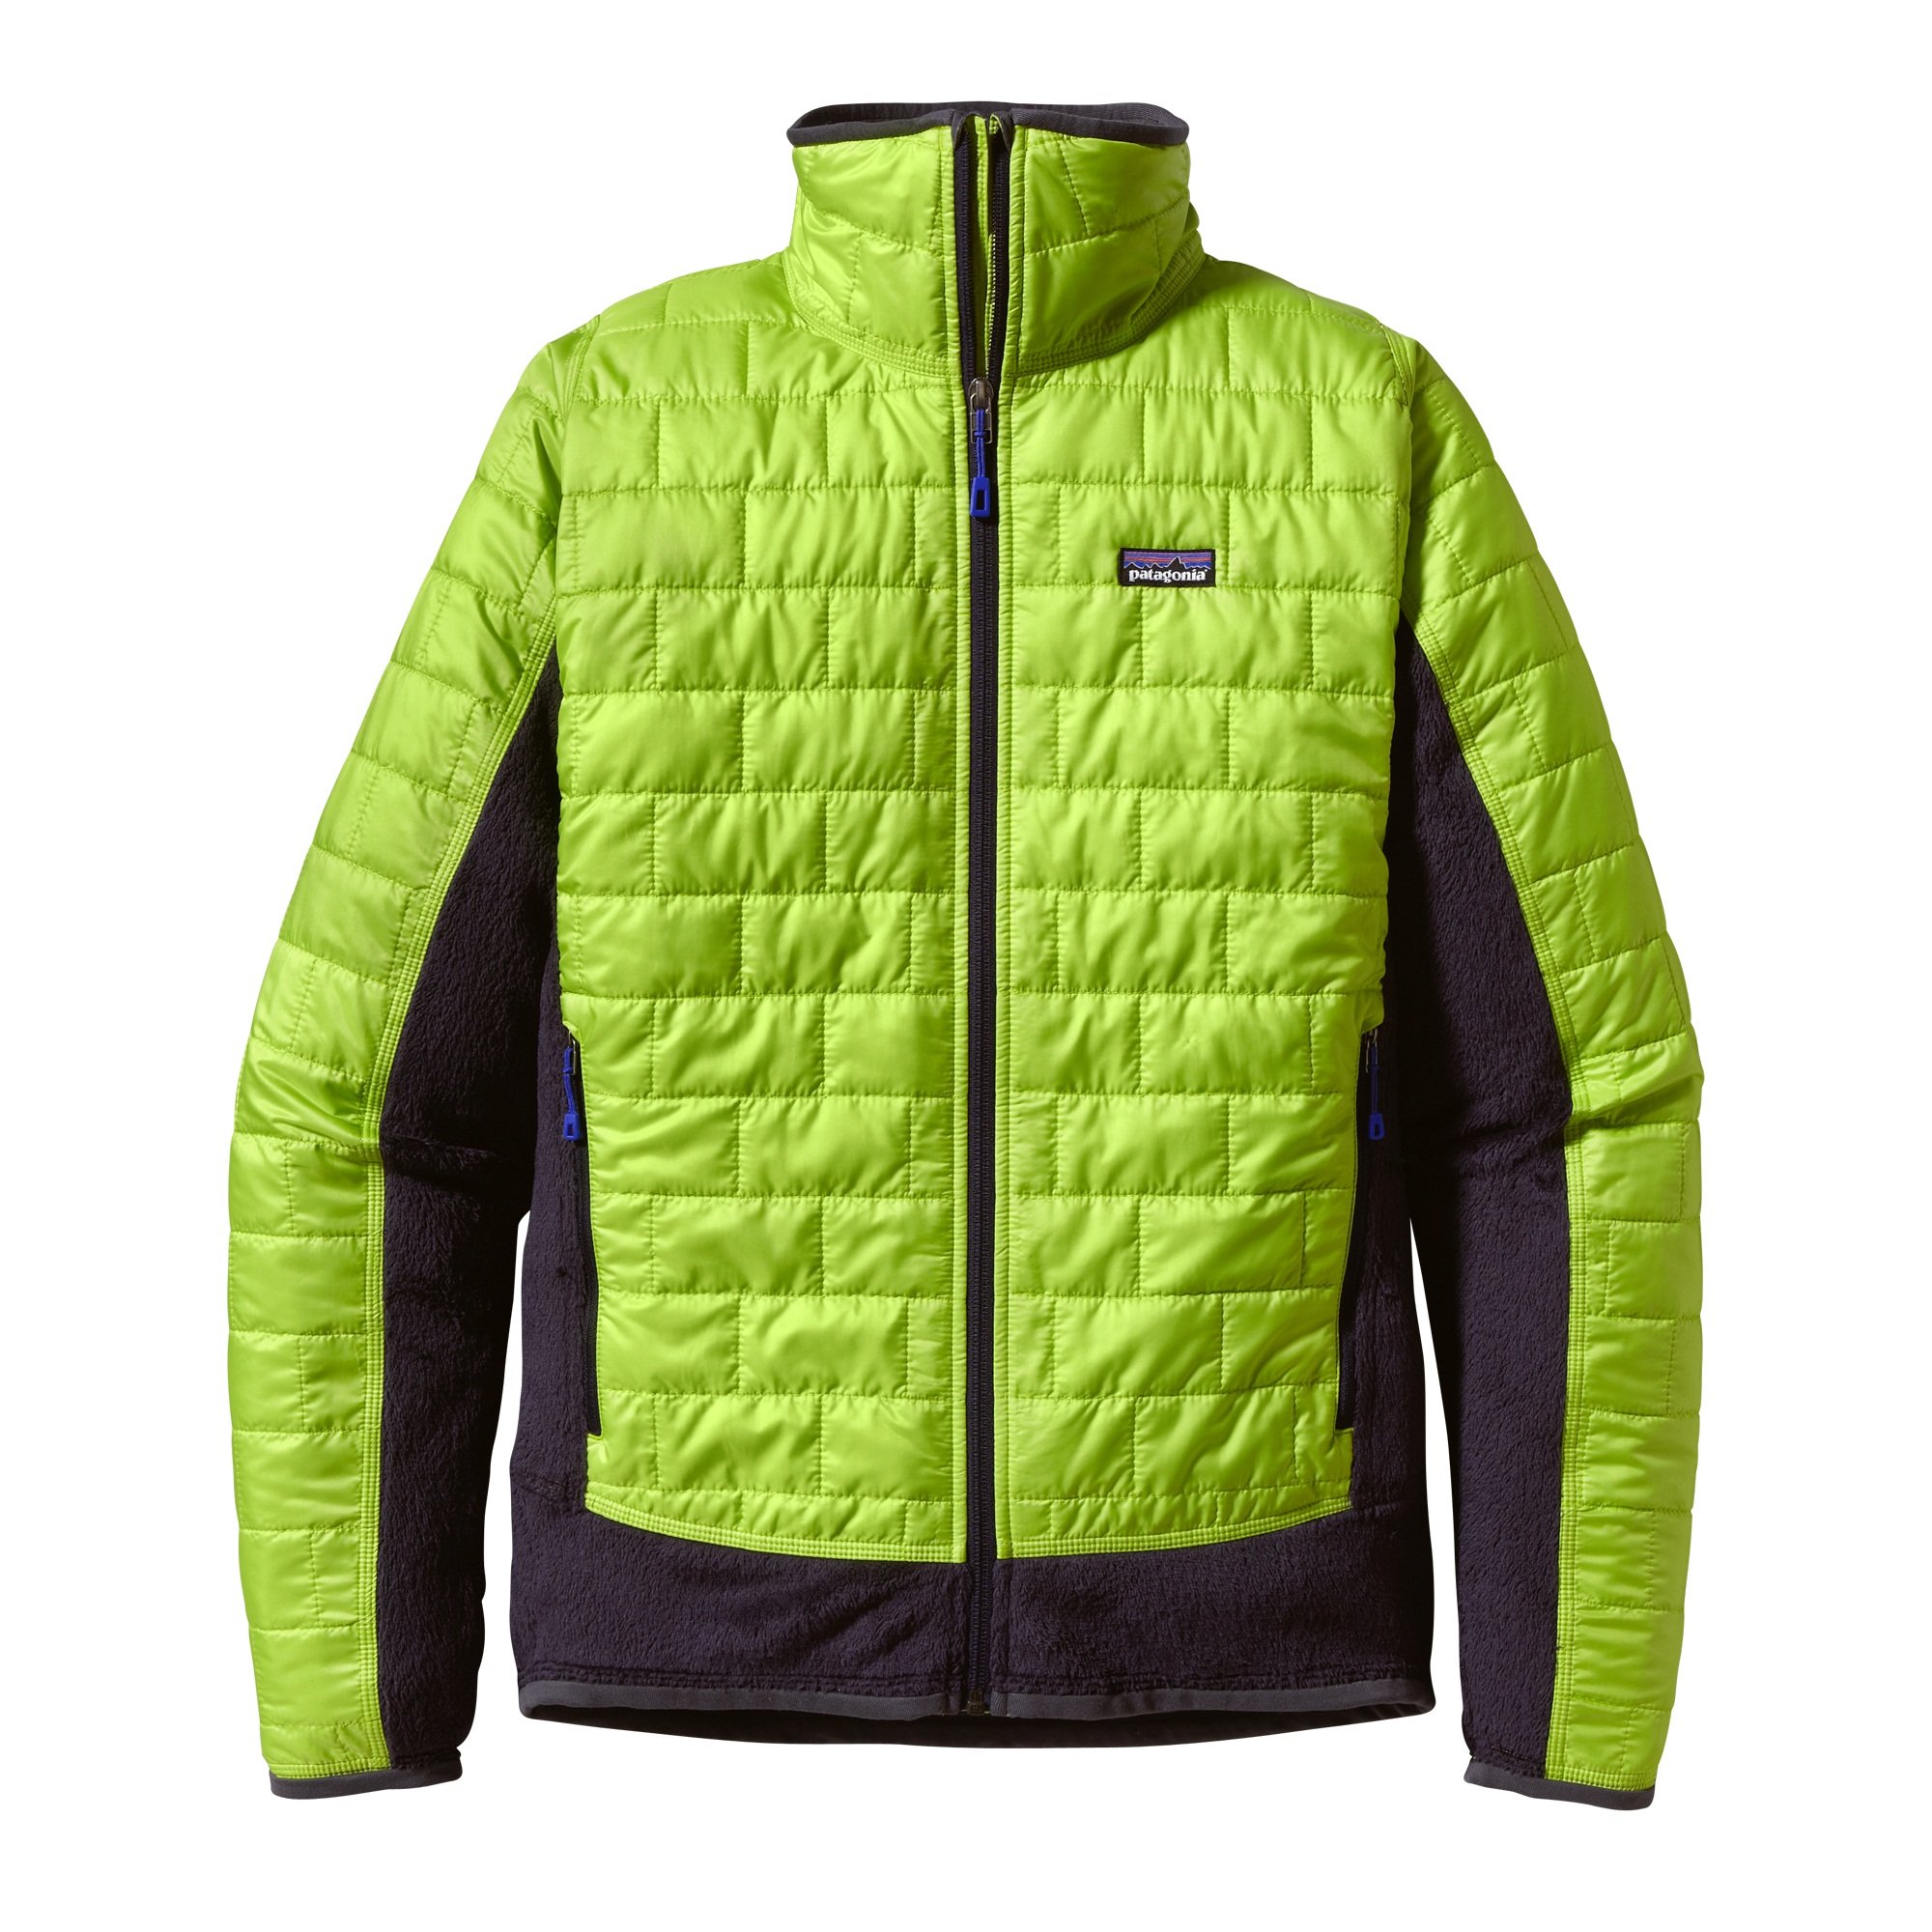 Testbericht – Patagonia Nano Puff Hybrid Jacket: Leichte Primaloft-Jacke mit funktionaler Materialkombination für Tourengeher